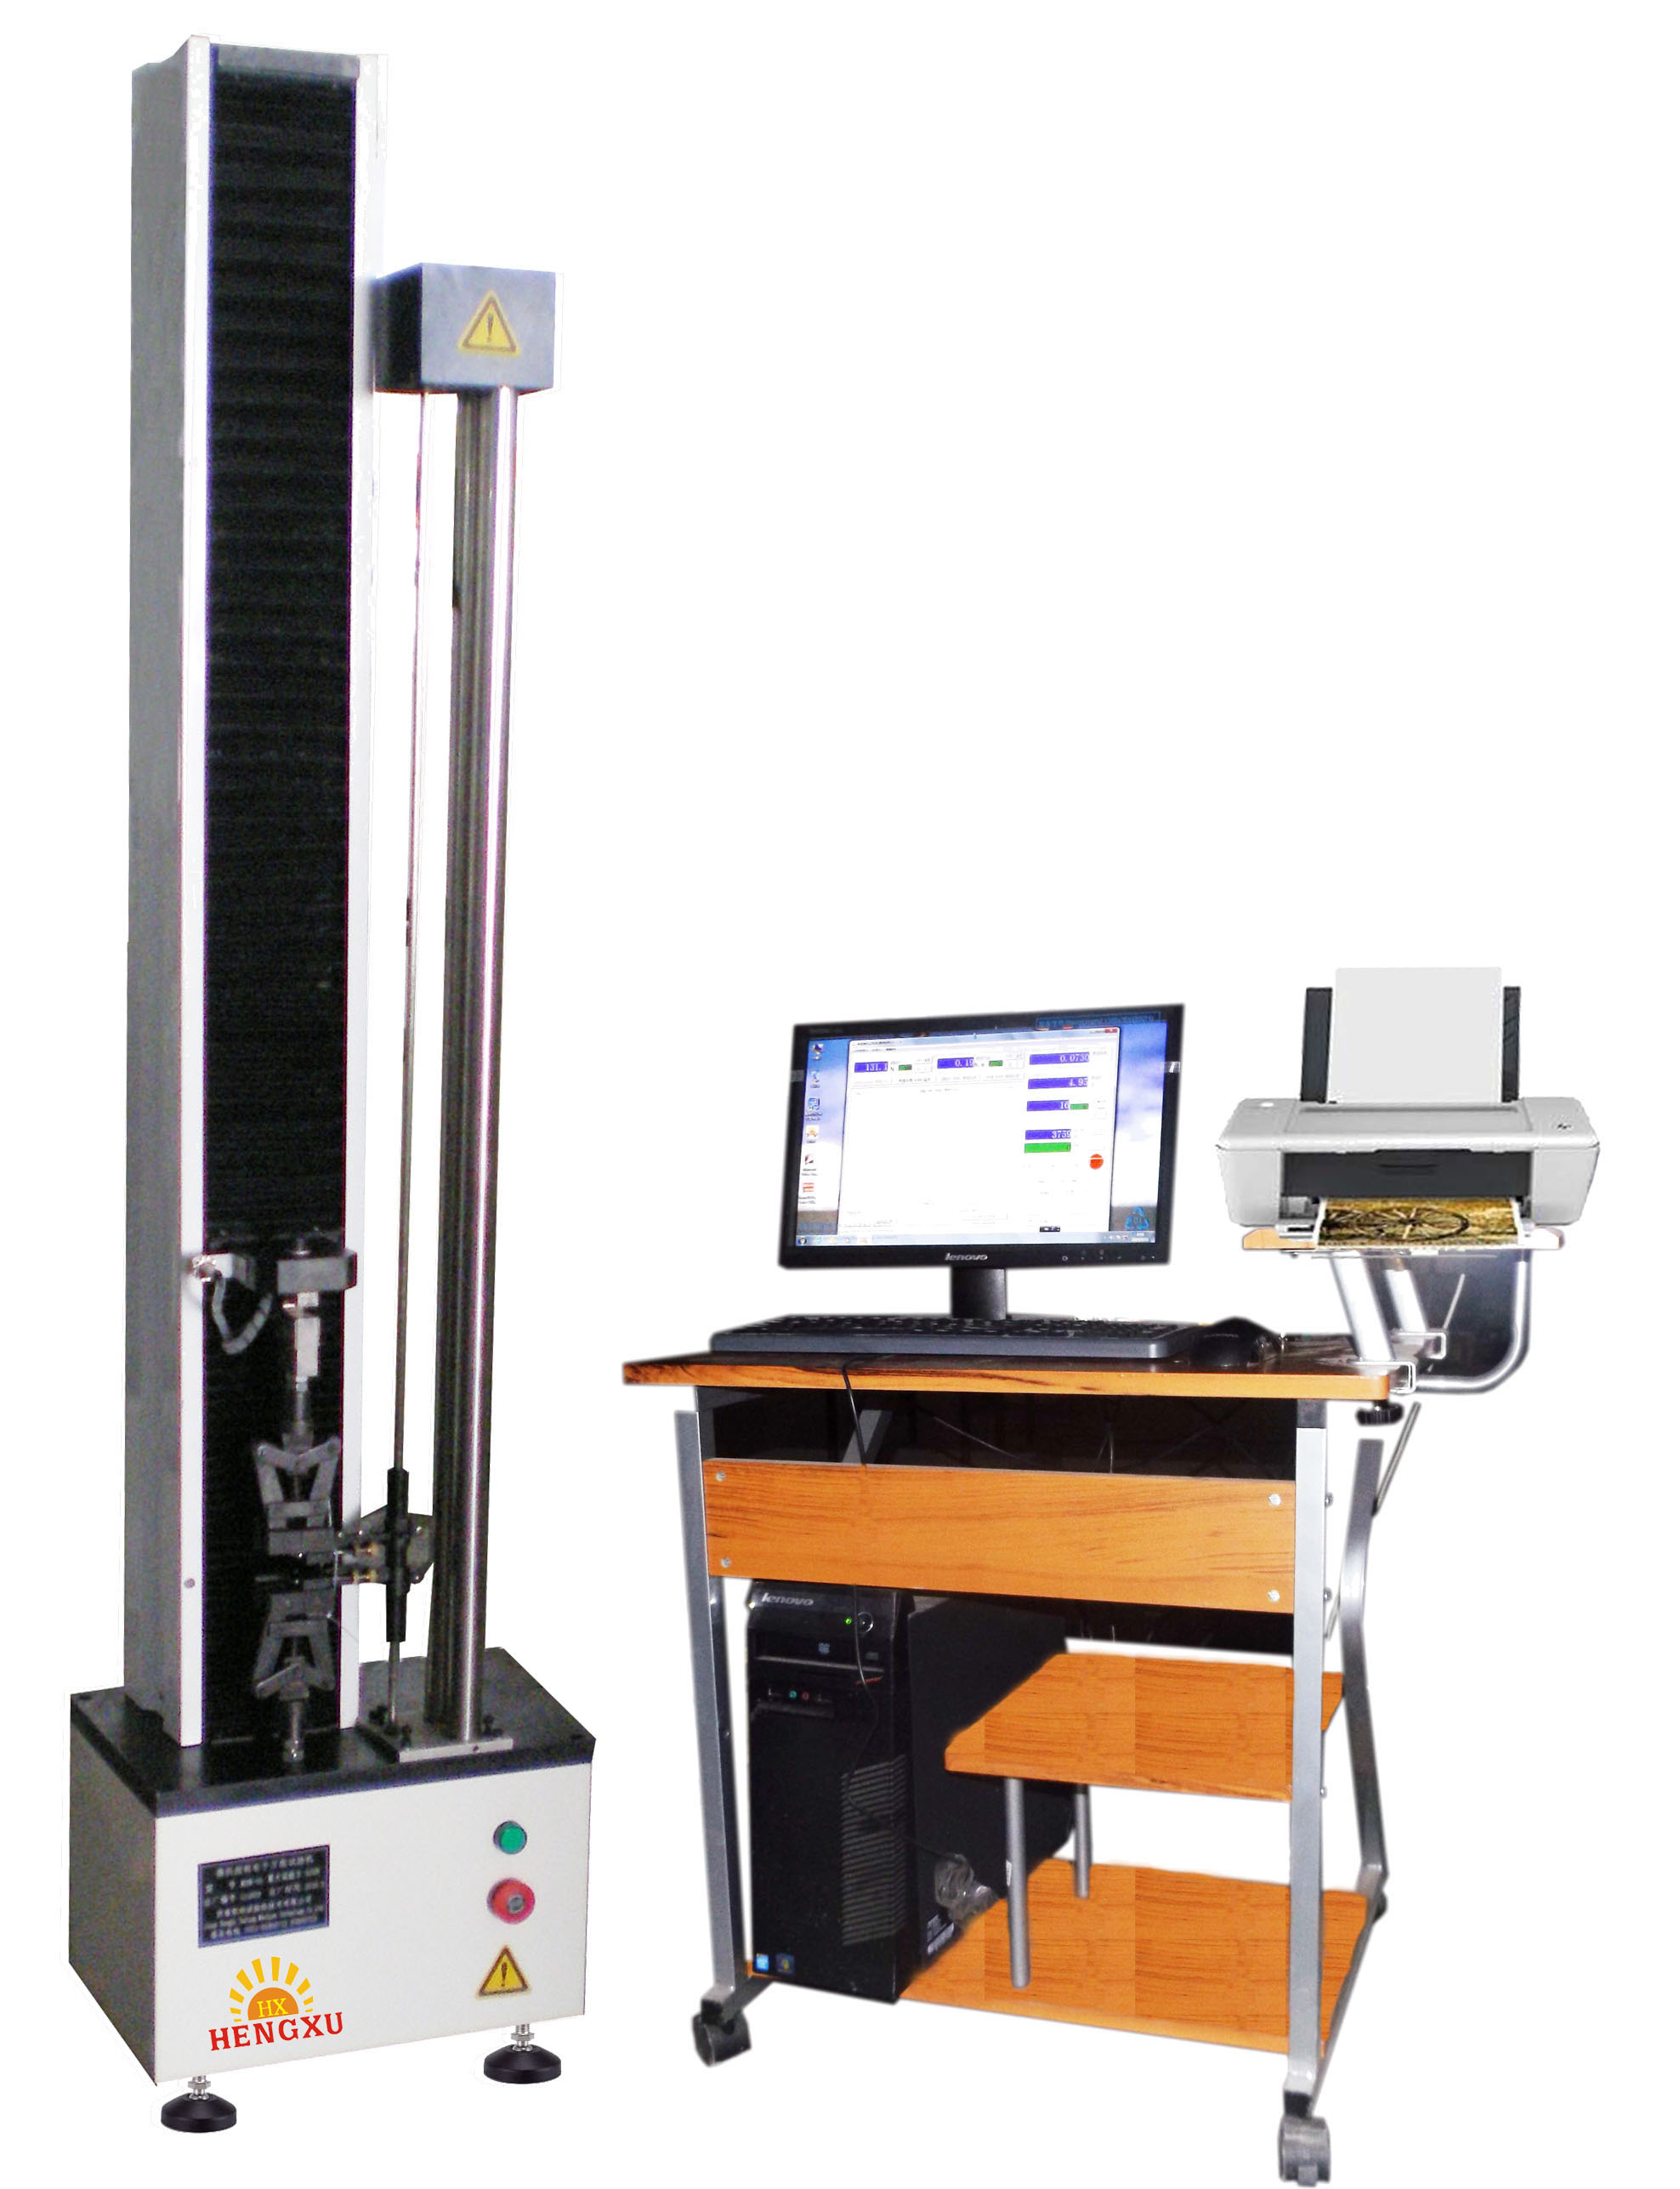 材料试验机 橡胶拉力机 山东专业生产恒旭HDW-5橡胶拉力测试仪1